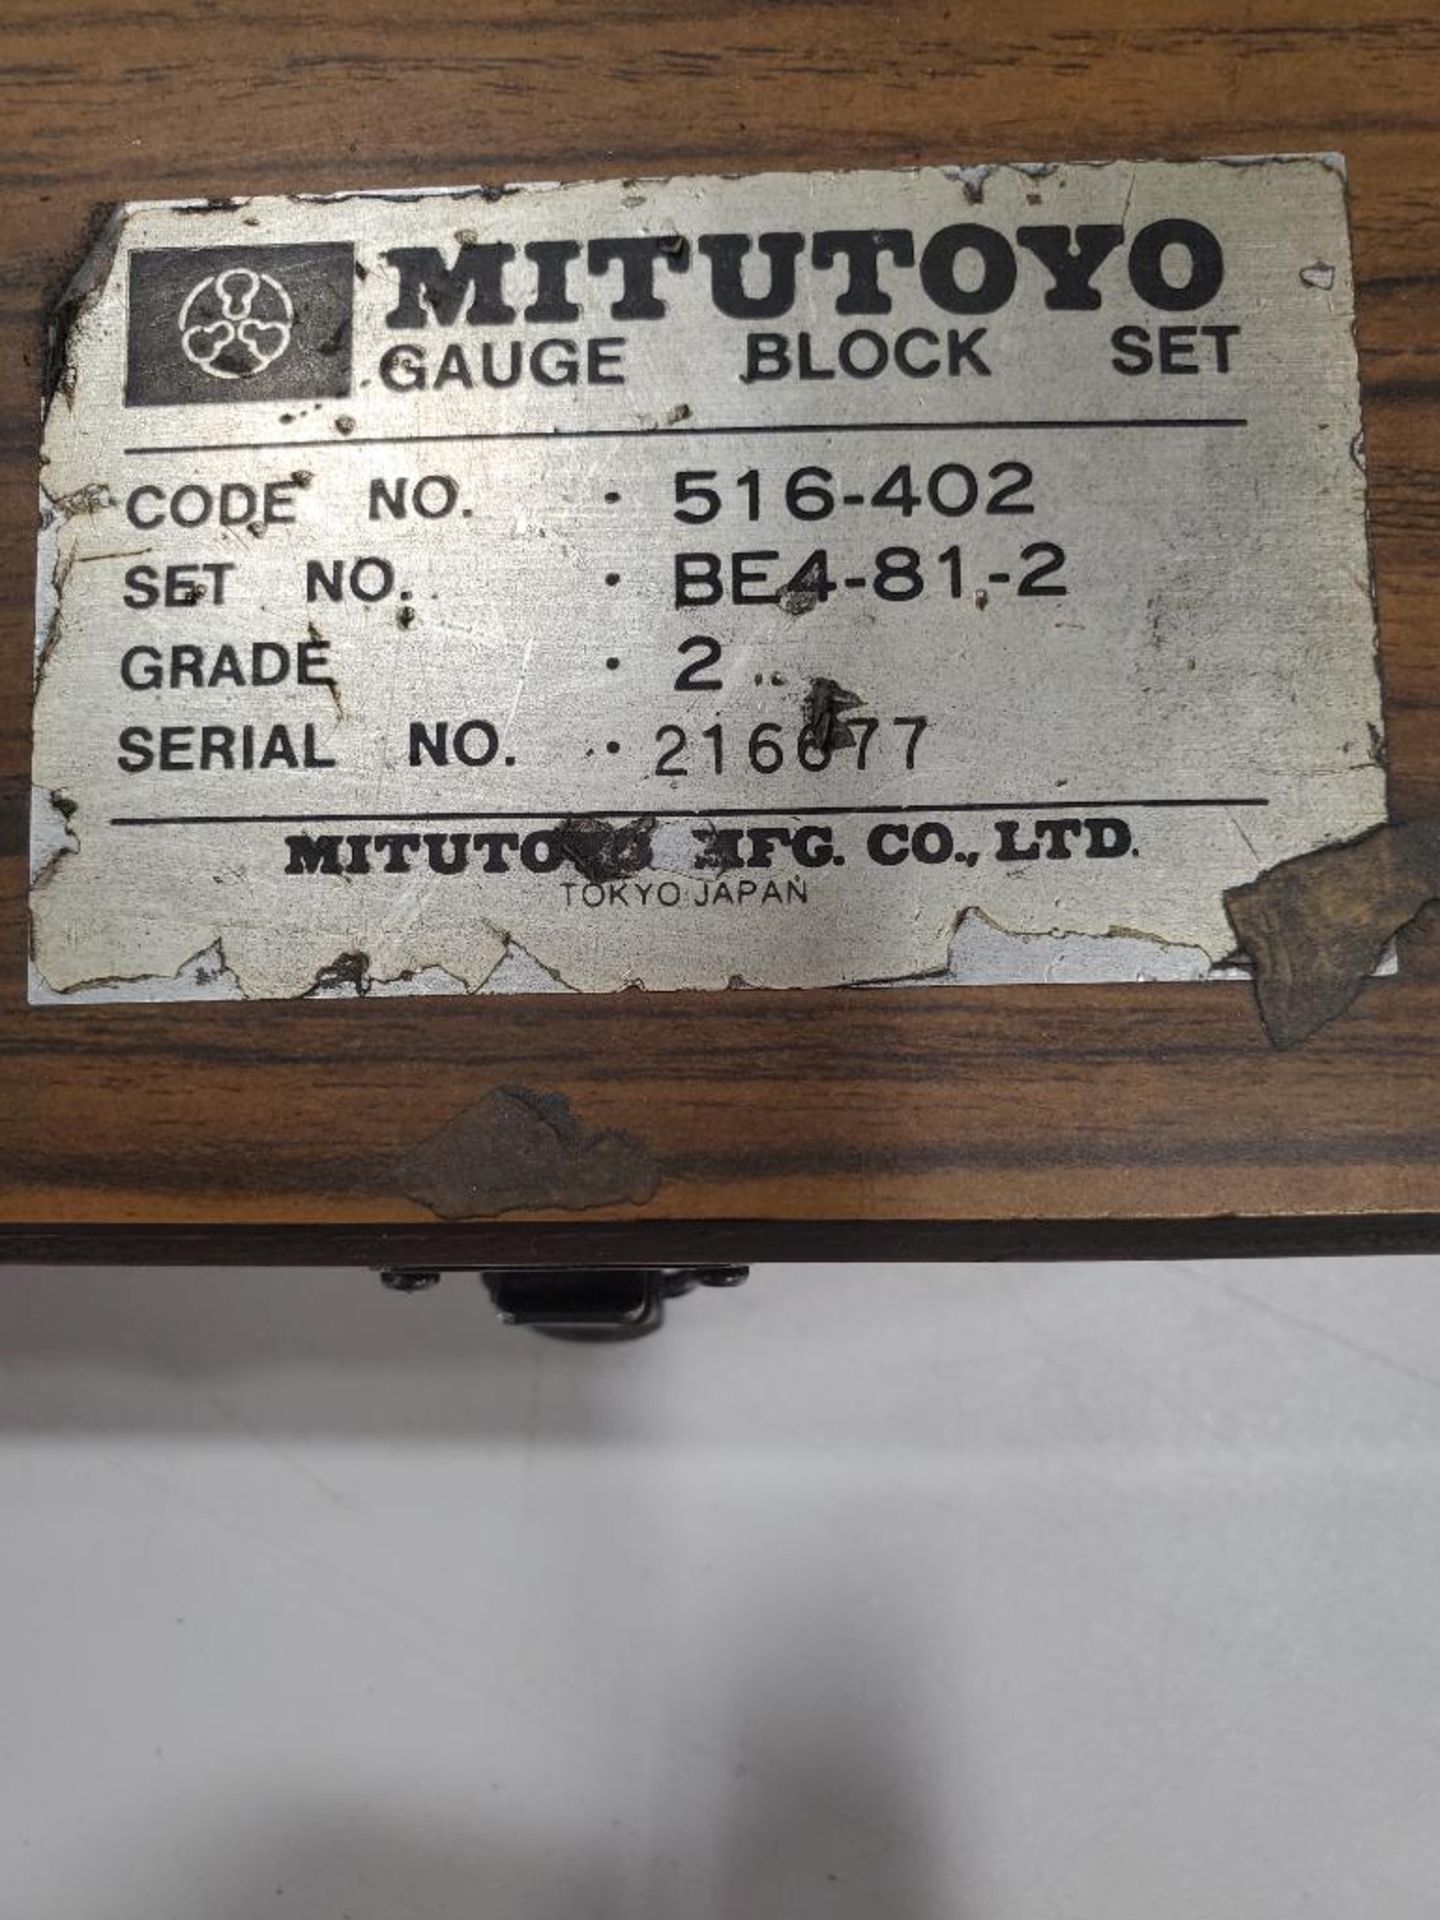 MITUTOYO GAUGE BLOCK SET; CODE 516-402, SET BE4-81-2, S/N 216677 - Image 2 of 2